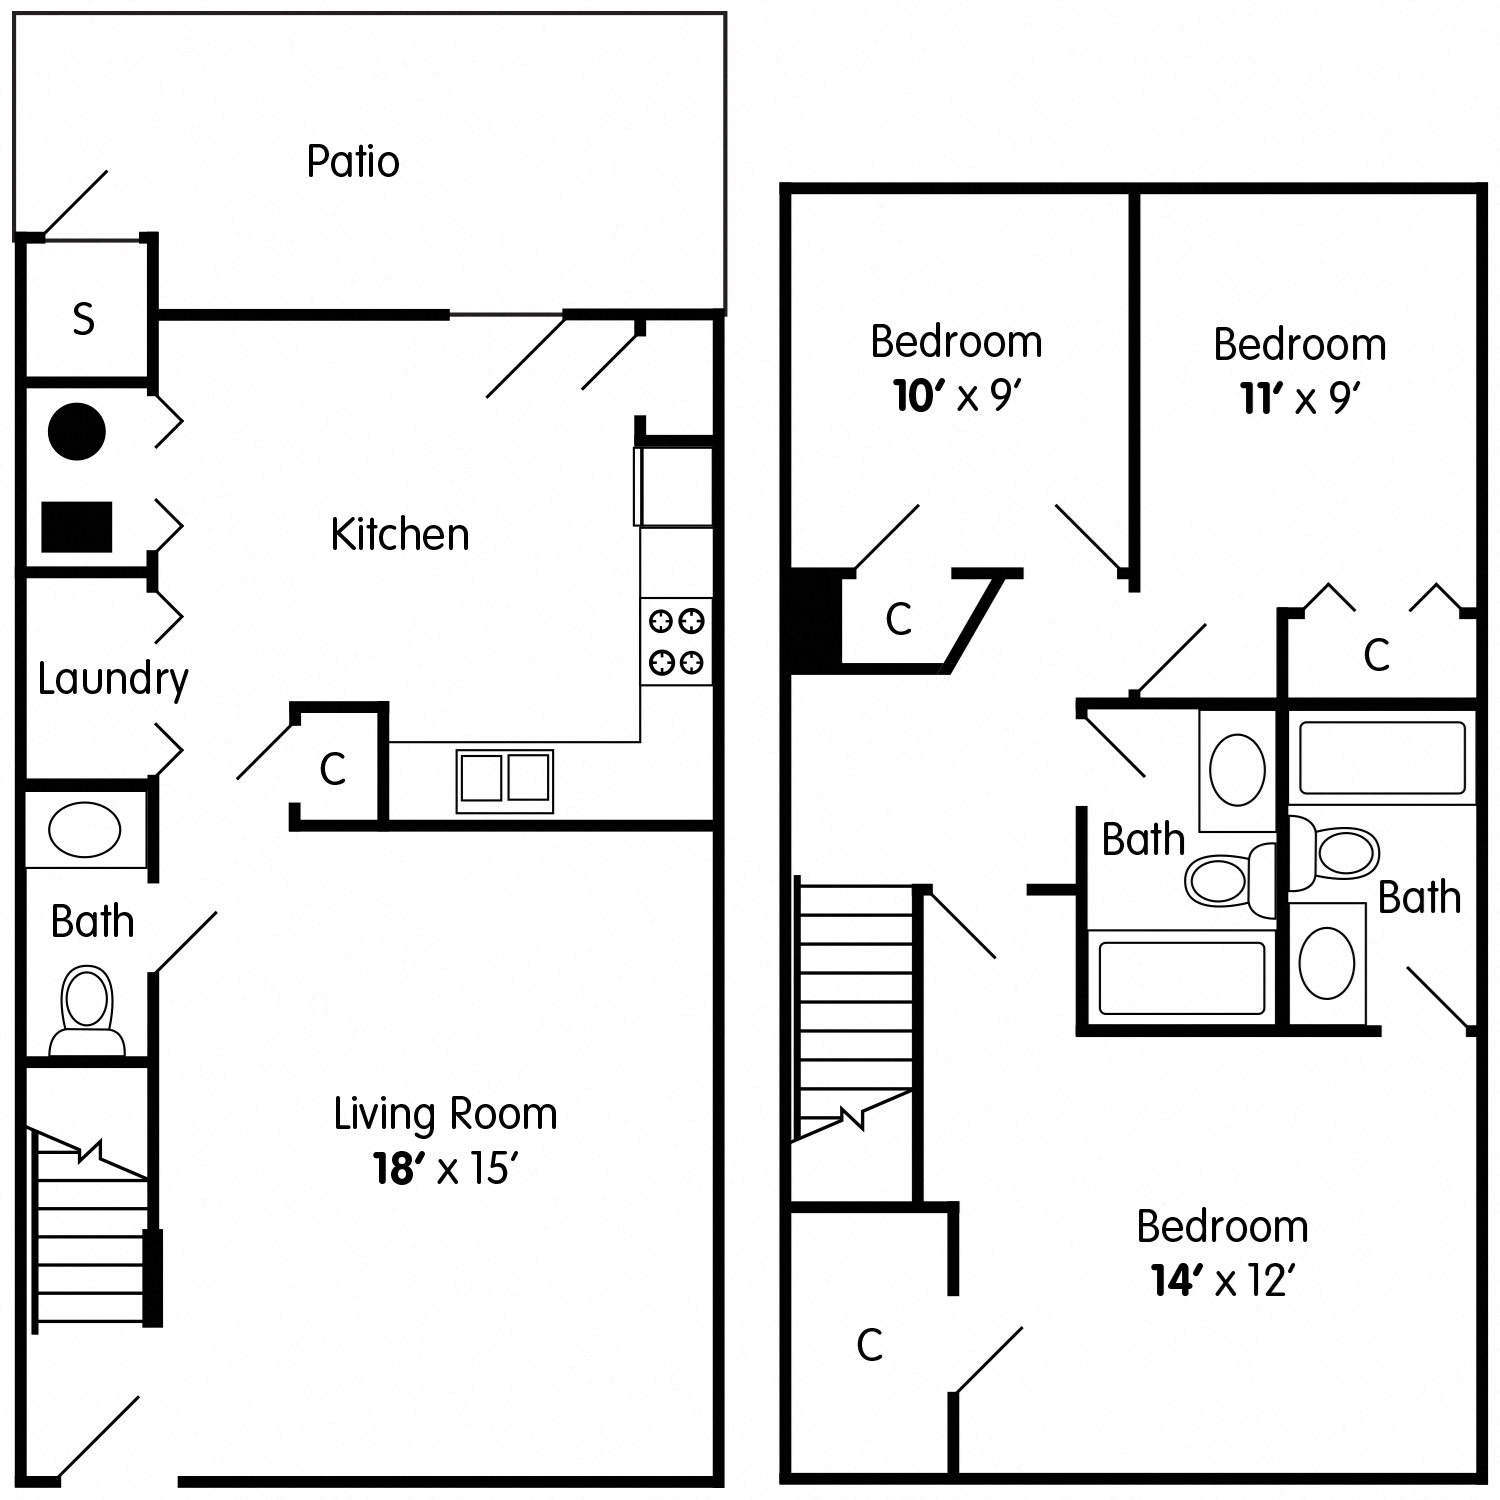 3 Bedroom Townhouse Floor Plans With Garage